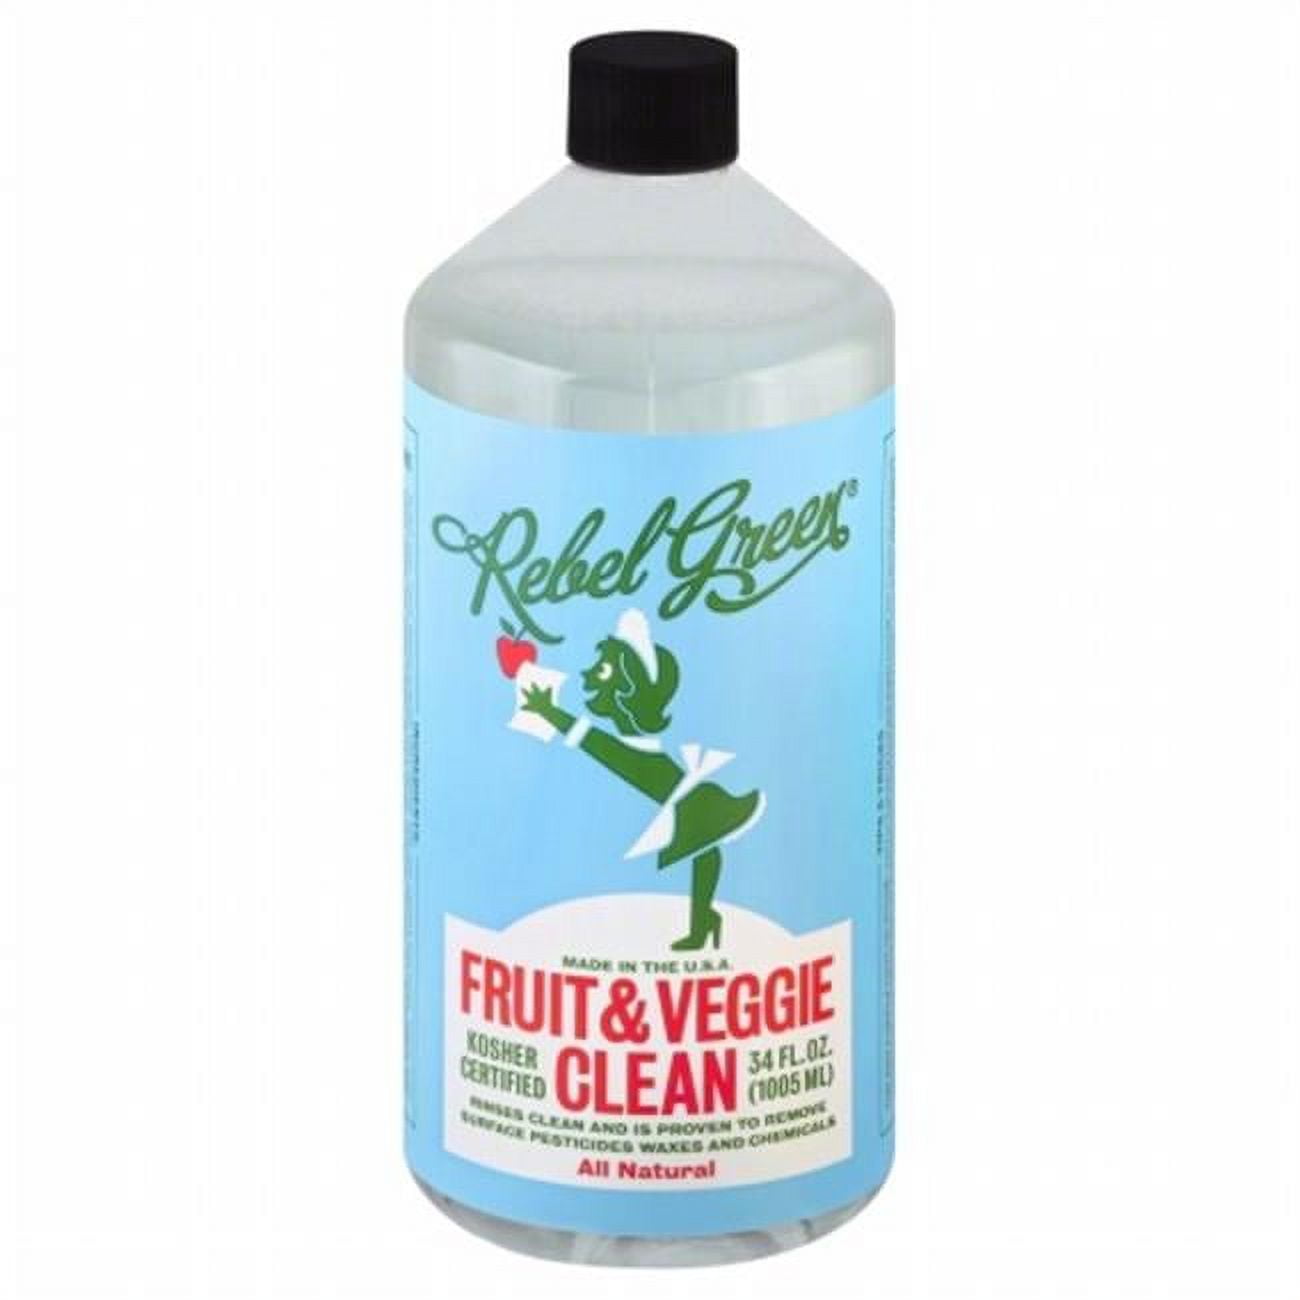 Organic Fruit & Veggie Wash, 22 fl oz at Whole Foods Market